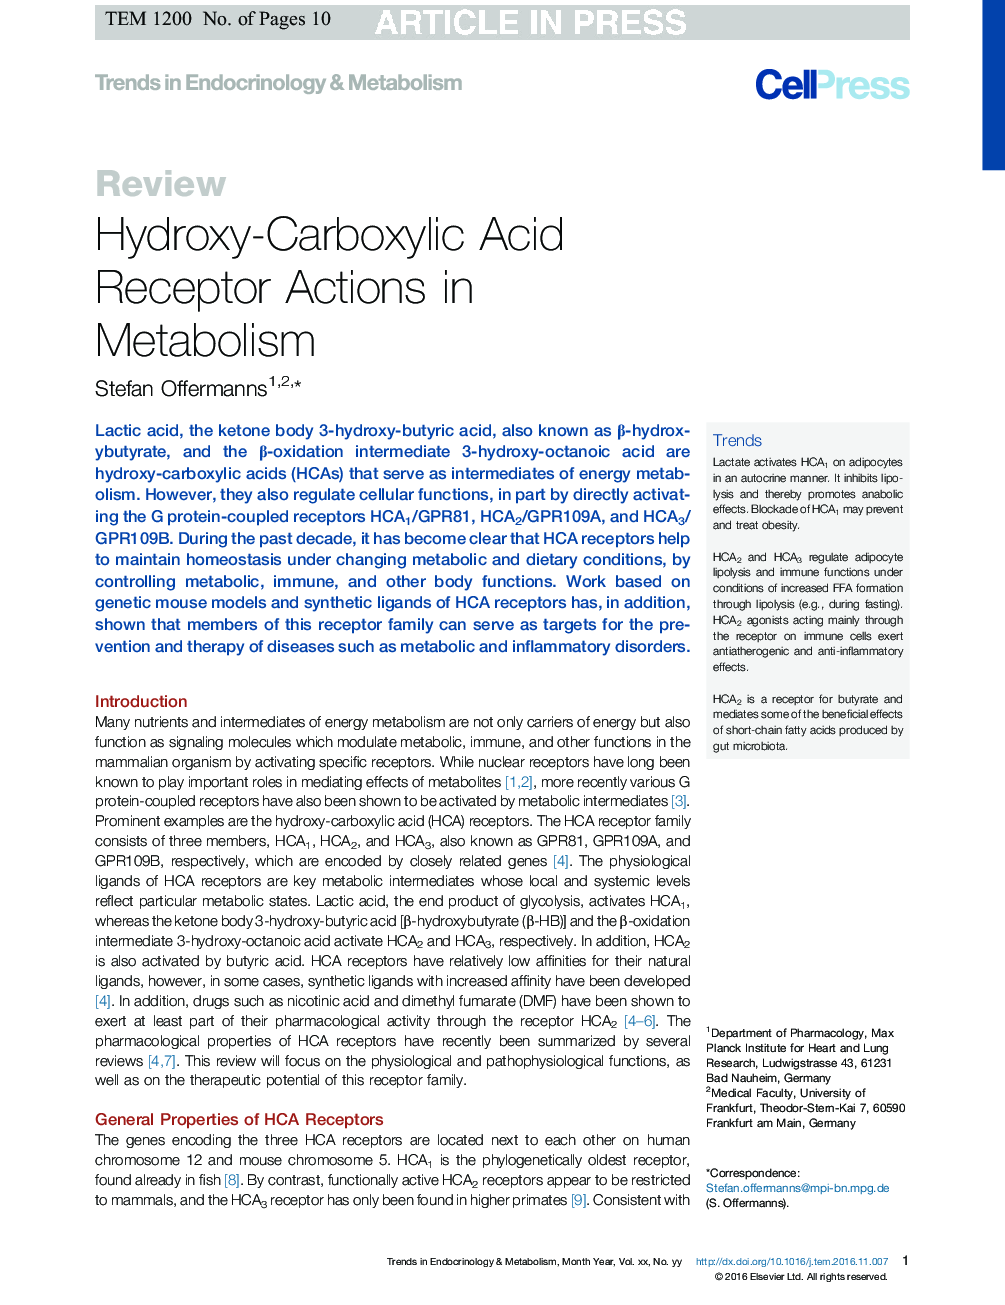 اقدامات گیرنده هیدروکسی کربوکسیلیک اسید در متابولیسم 